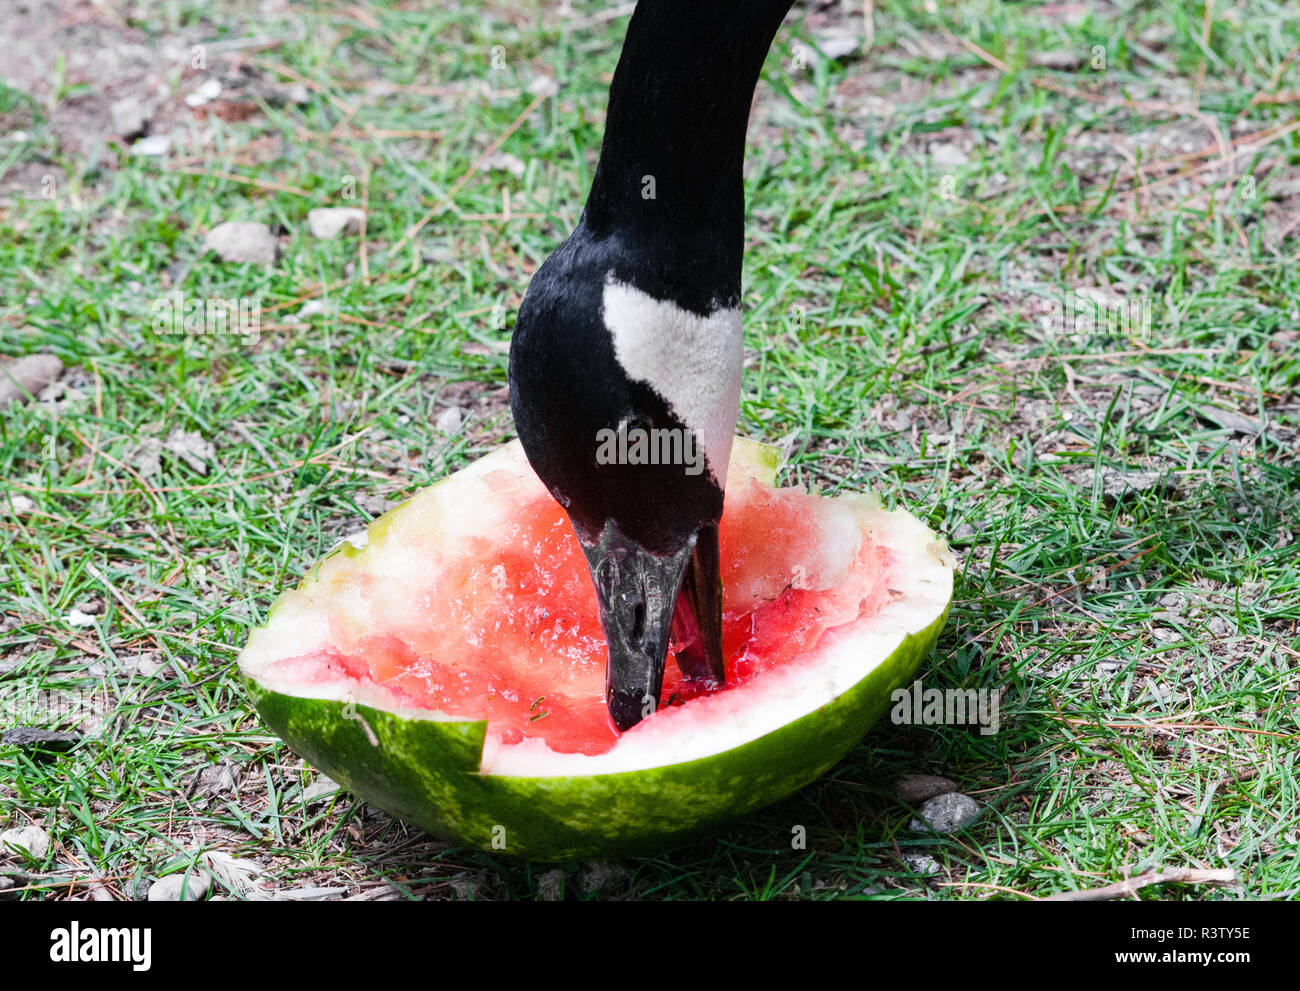 Melon Munching stock image. Image of eating, licking, amusing - 8013381